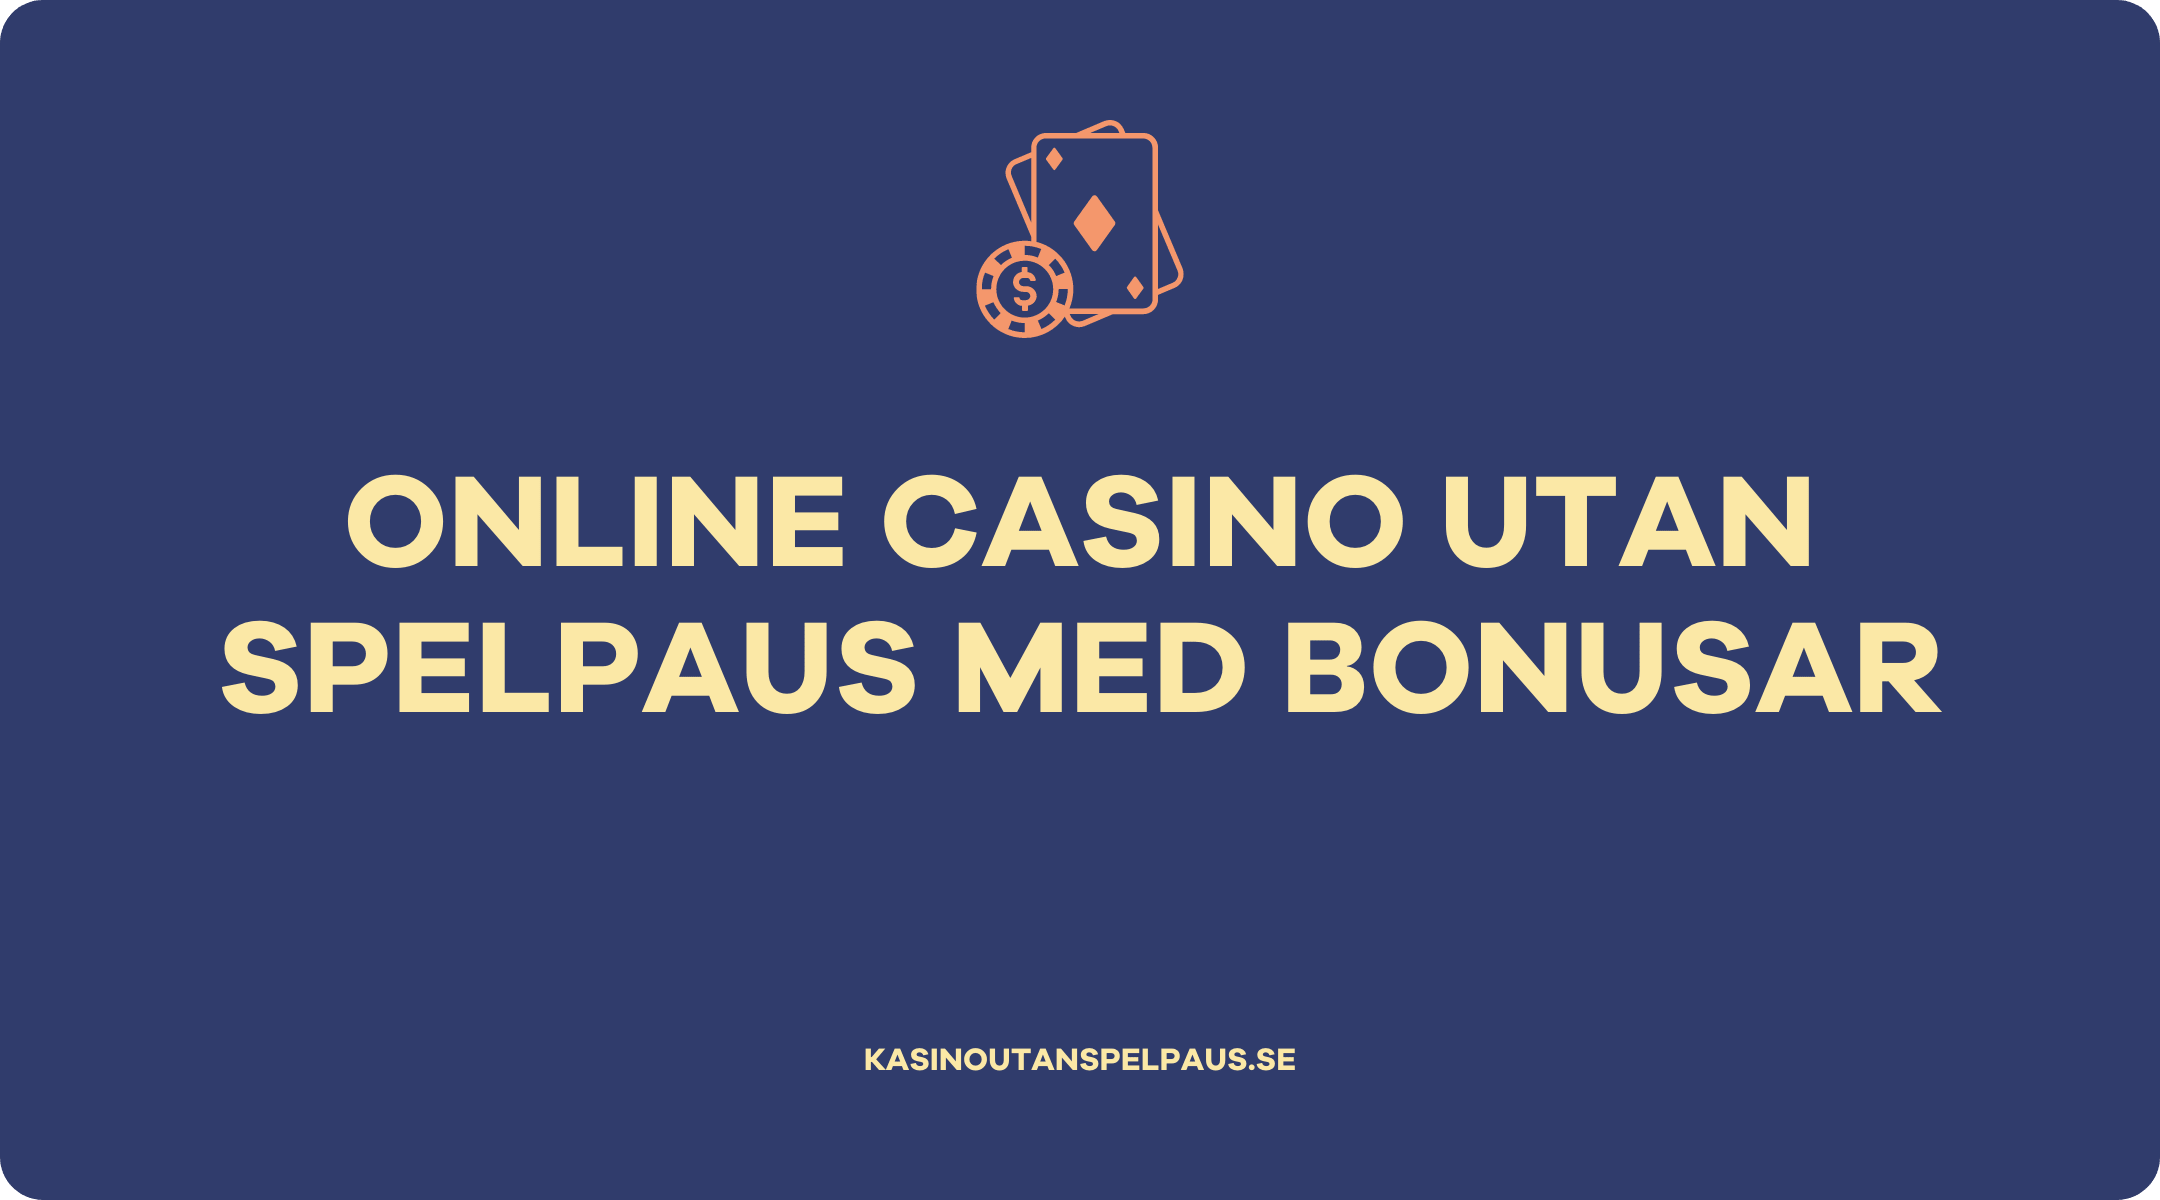 Online casino utan spelpaus med bonusar